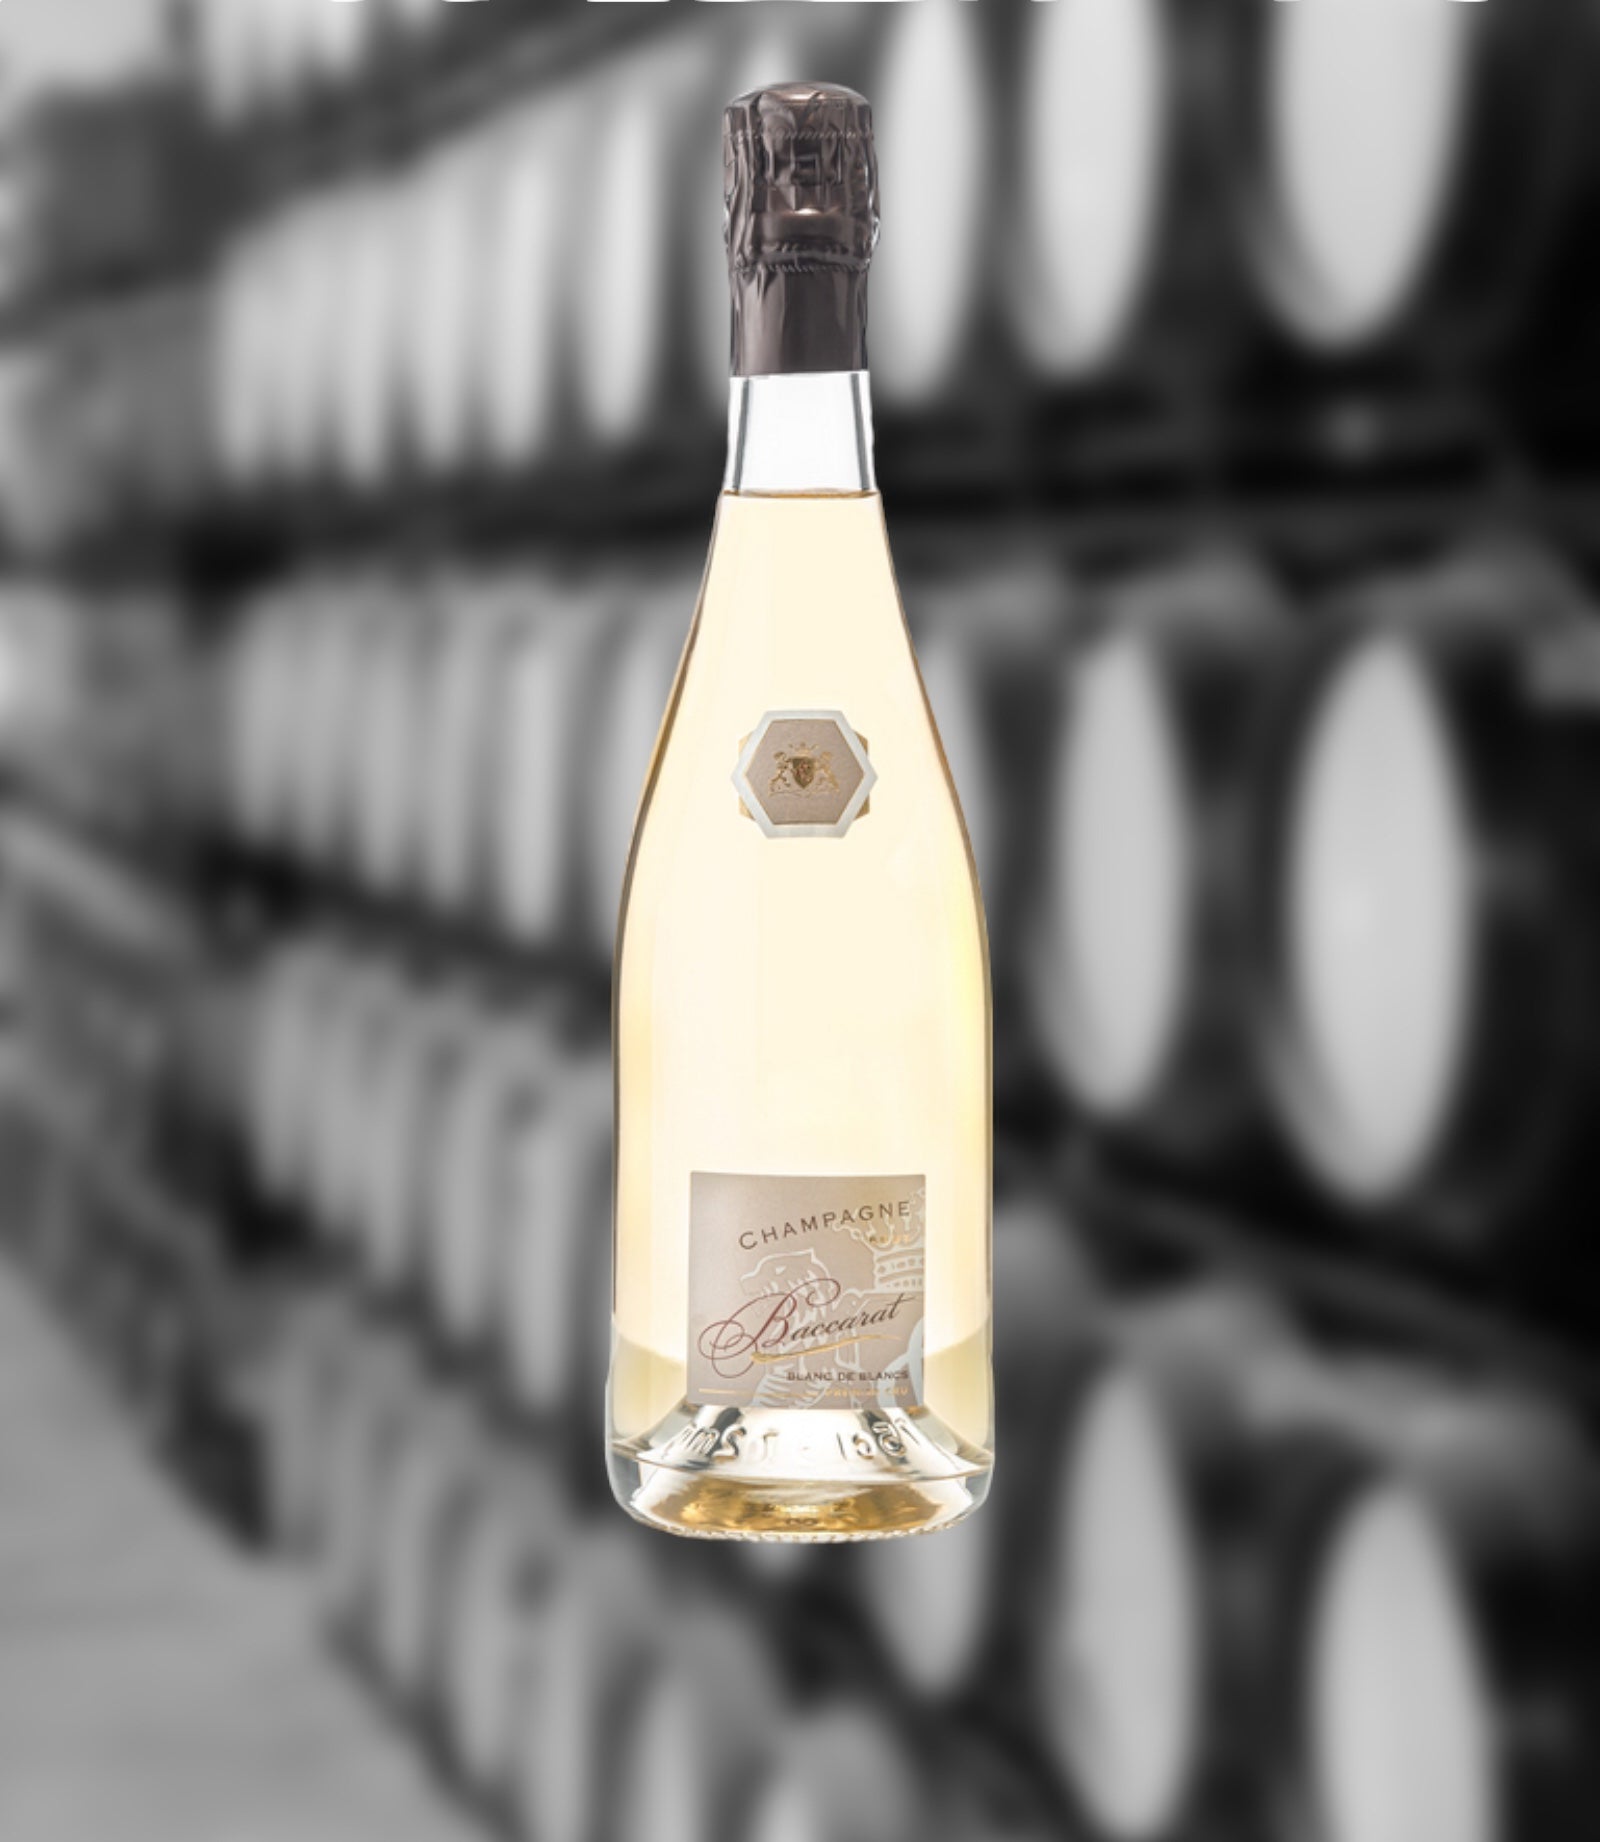 Champagne Laurent Charlier - Cuvée Baccarat Blanc de Blancs